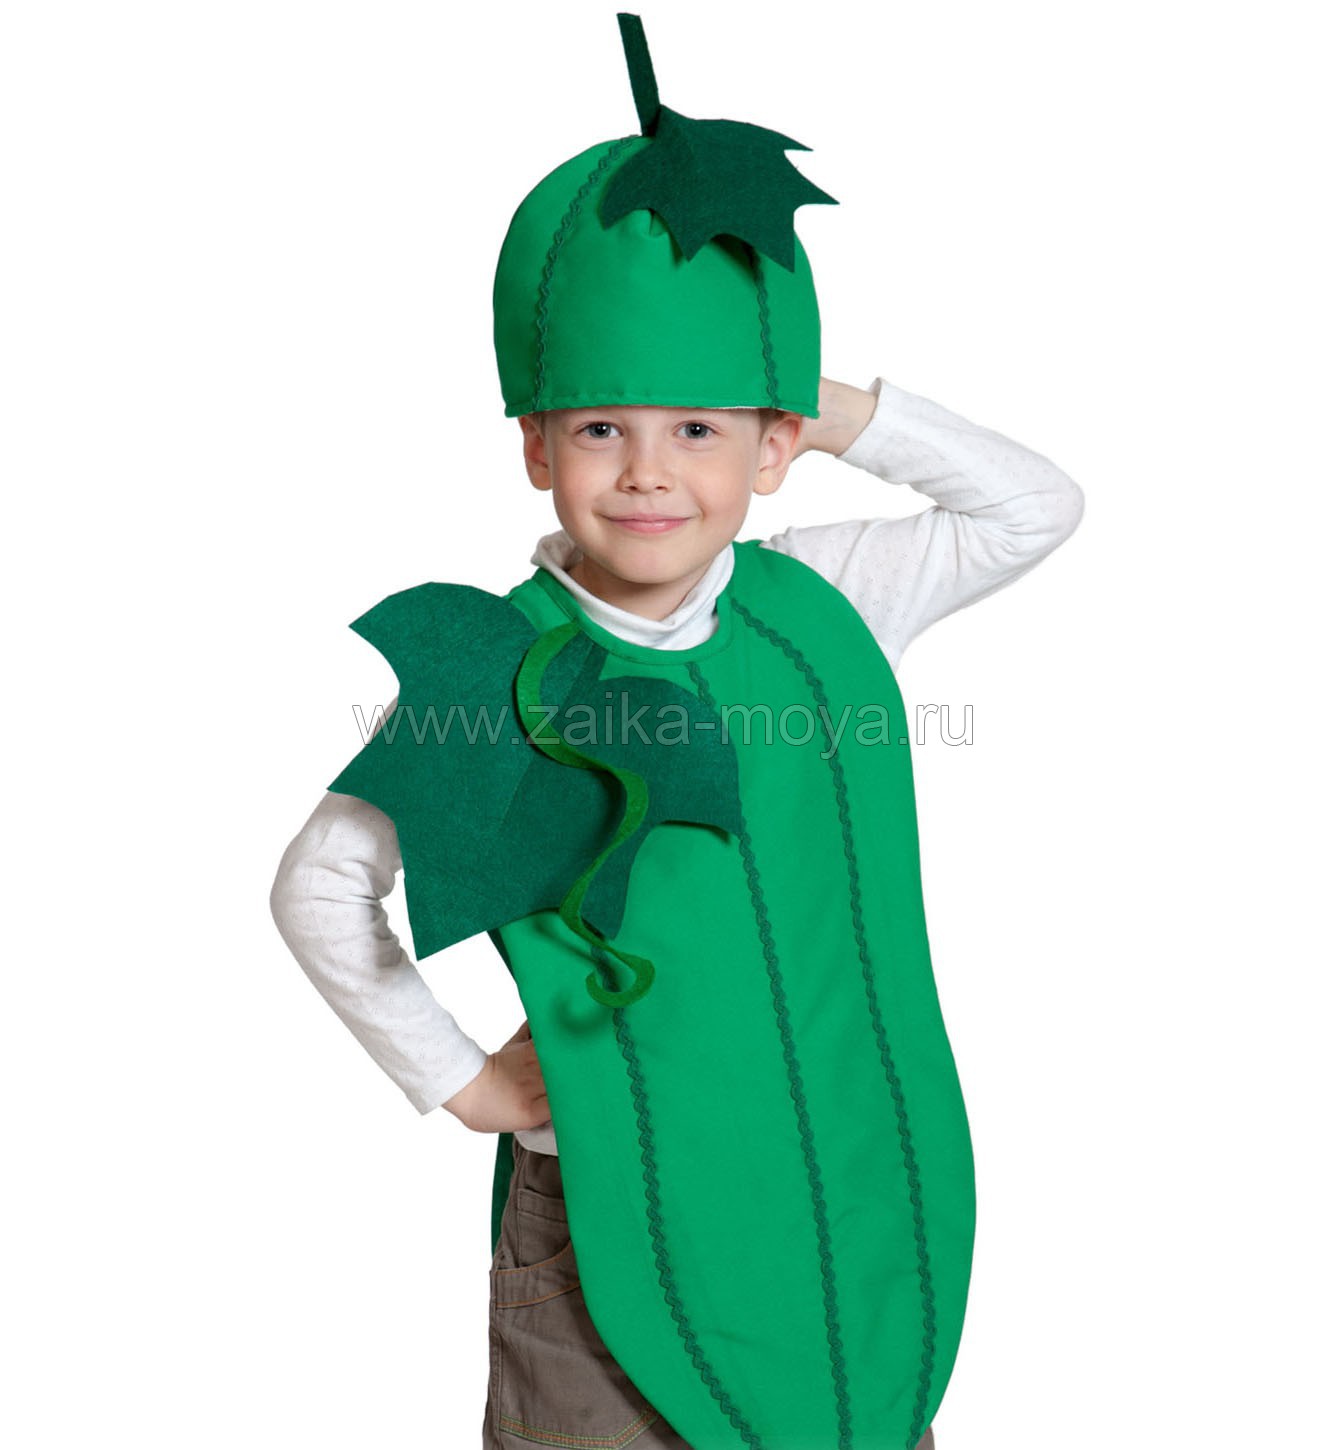 Сценические костюмы овощей и фруктов для мальчиков и девочек